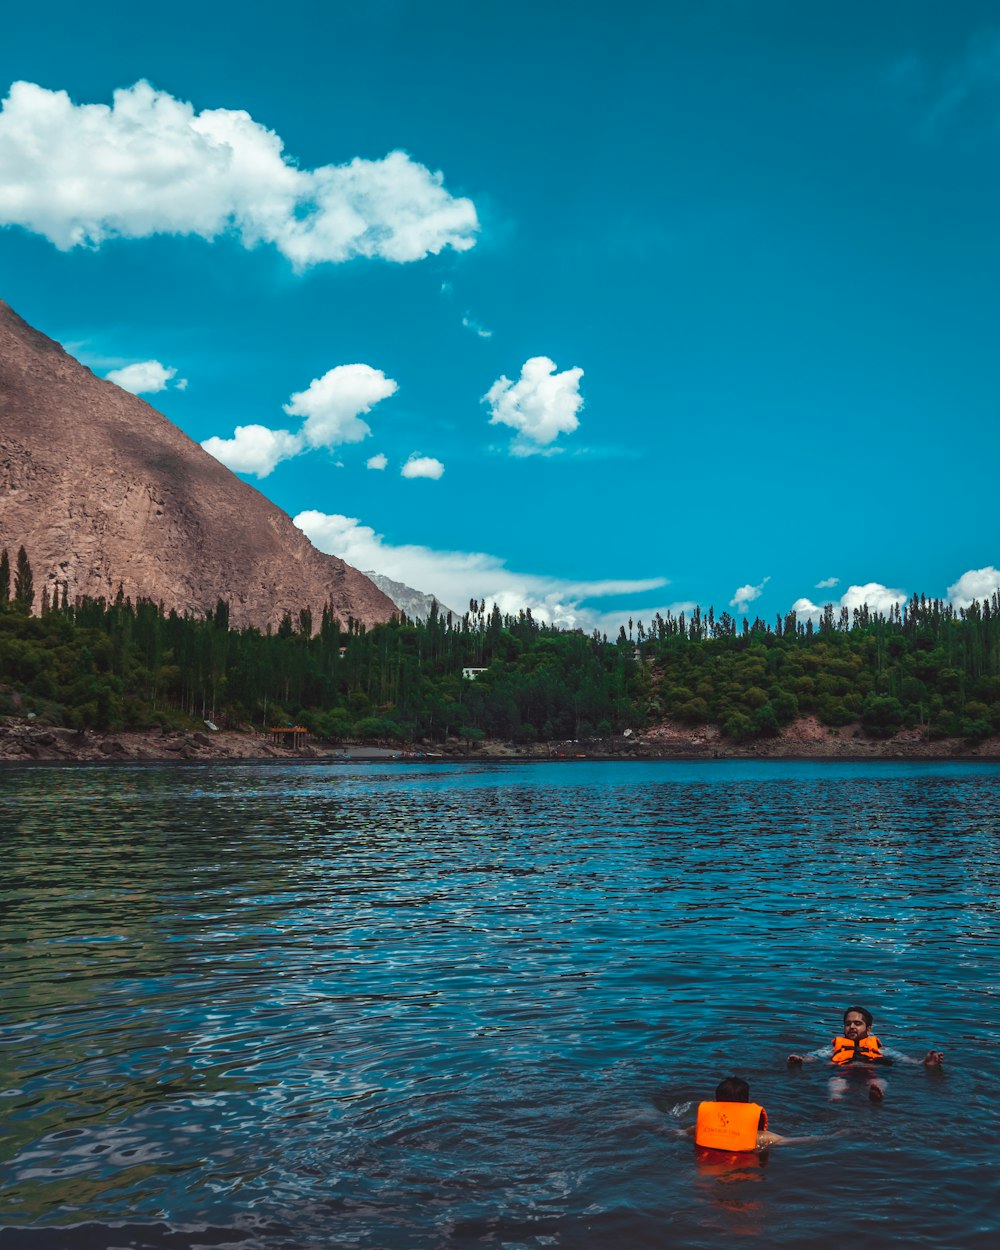 people riding kayak on lake near mountain under blue sky during daytime